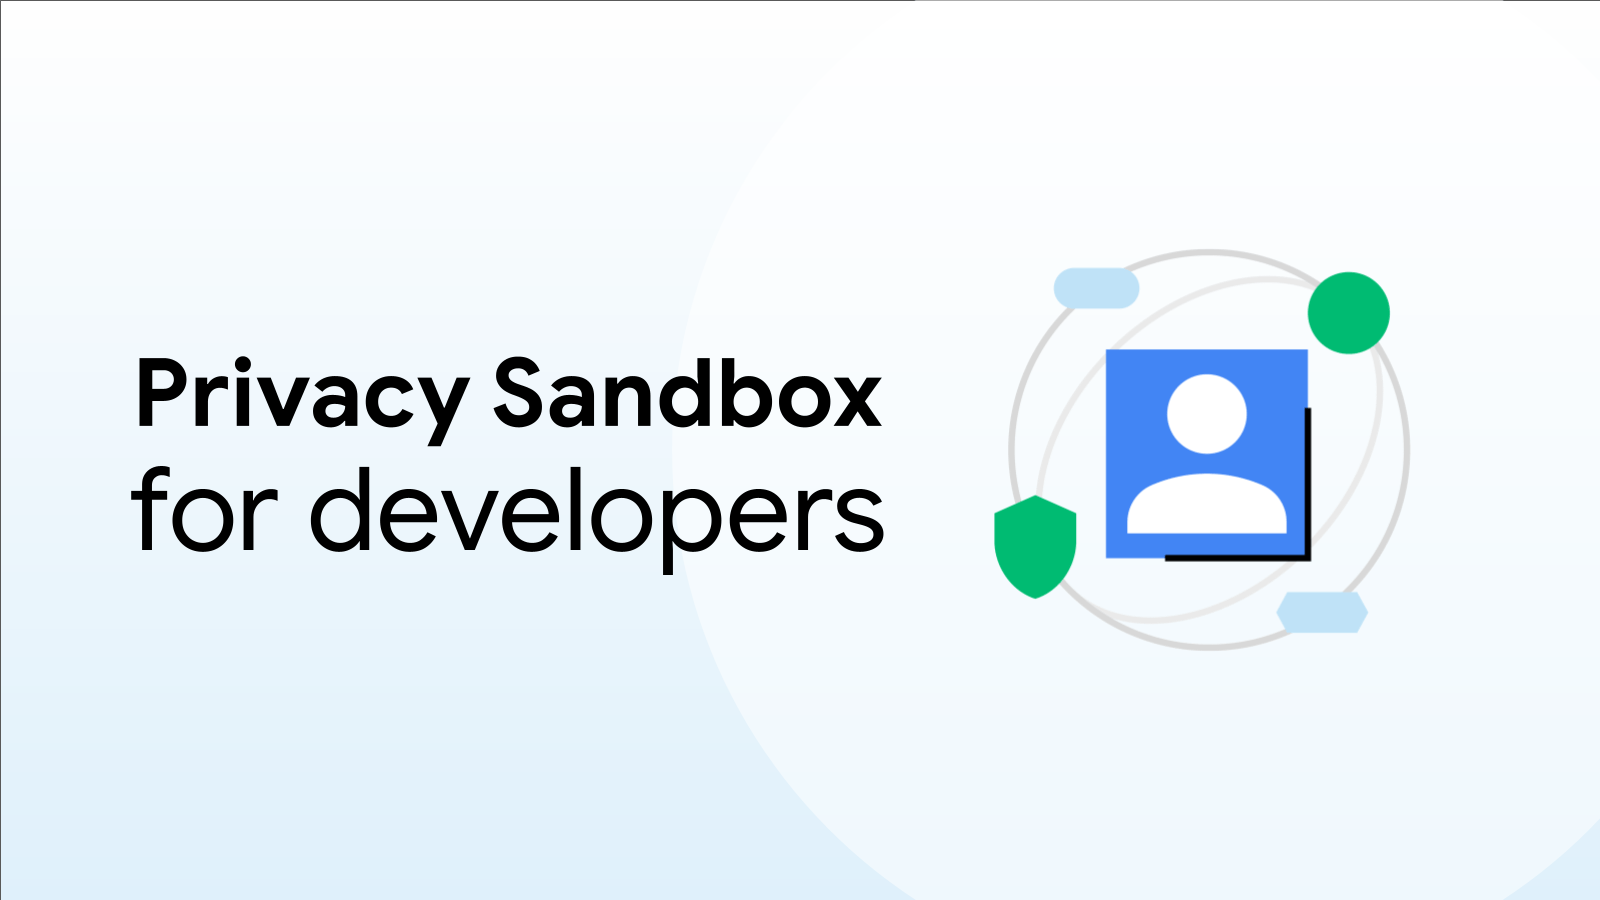 Chrome ユーザーの 1% に対して、デフォルトでサードパーティ Cookie の使用が制限されている  |  Privacy Sandbox  |  Google for Developers